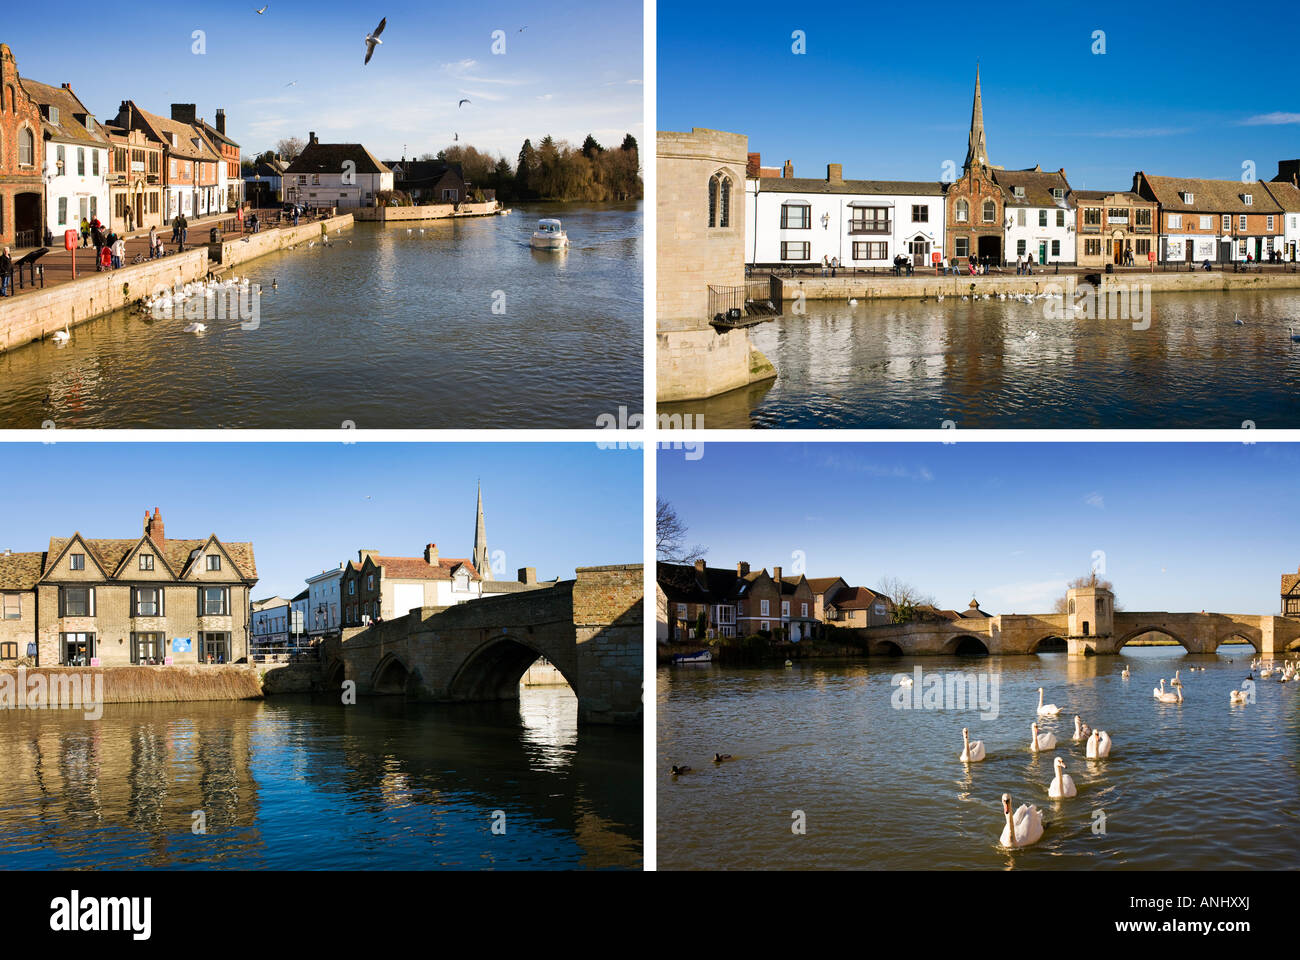 Cuatro imágenes de un pueblo tradicional inglés, todo en un mismo tipo de imagen de postal, St Ives en Cambridgeshire Inglaterra Foto de stock